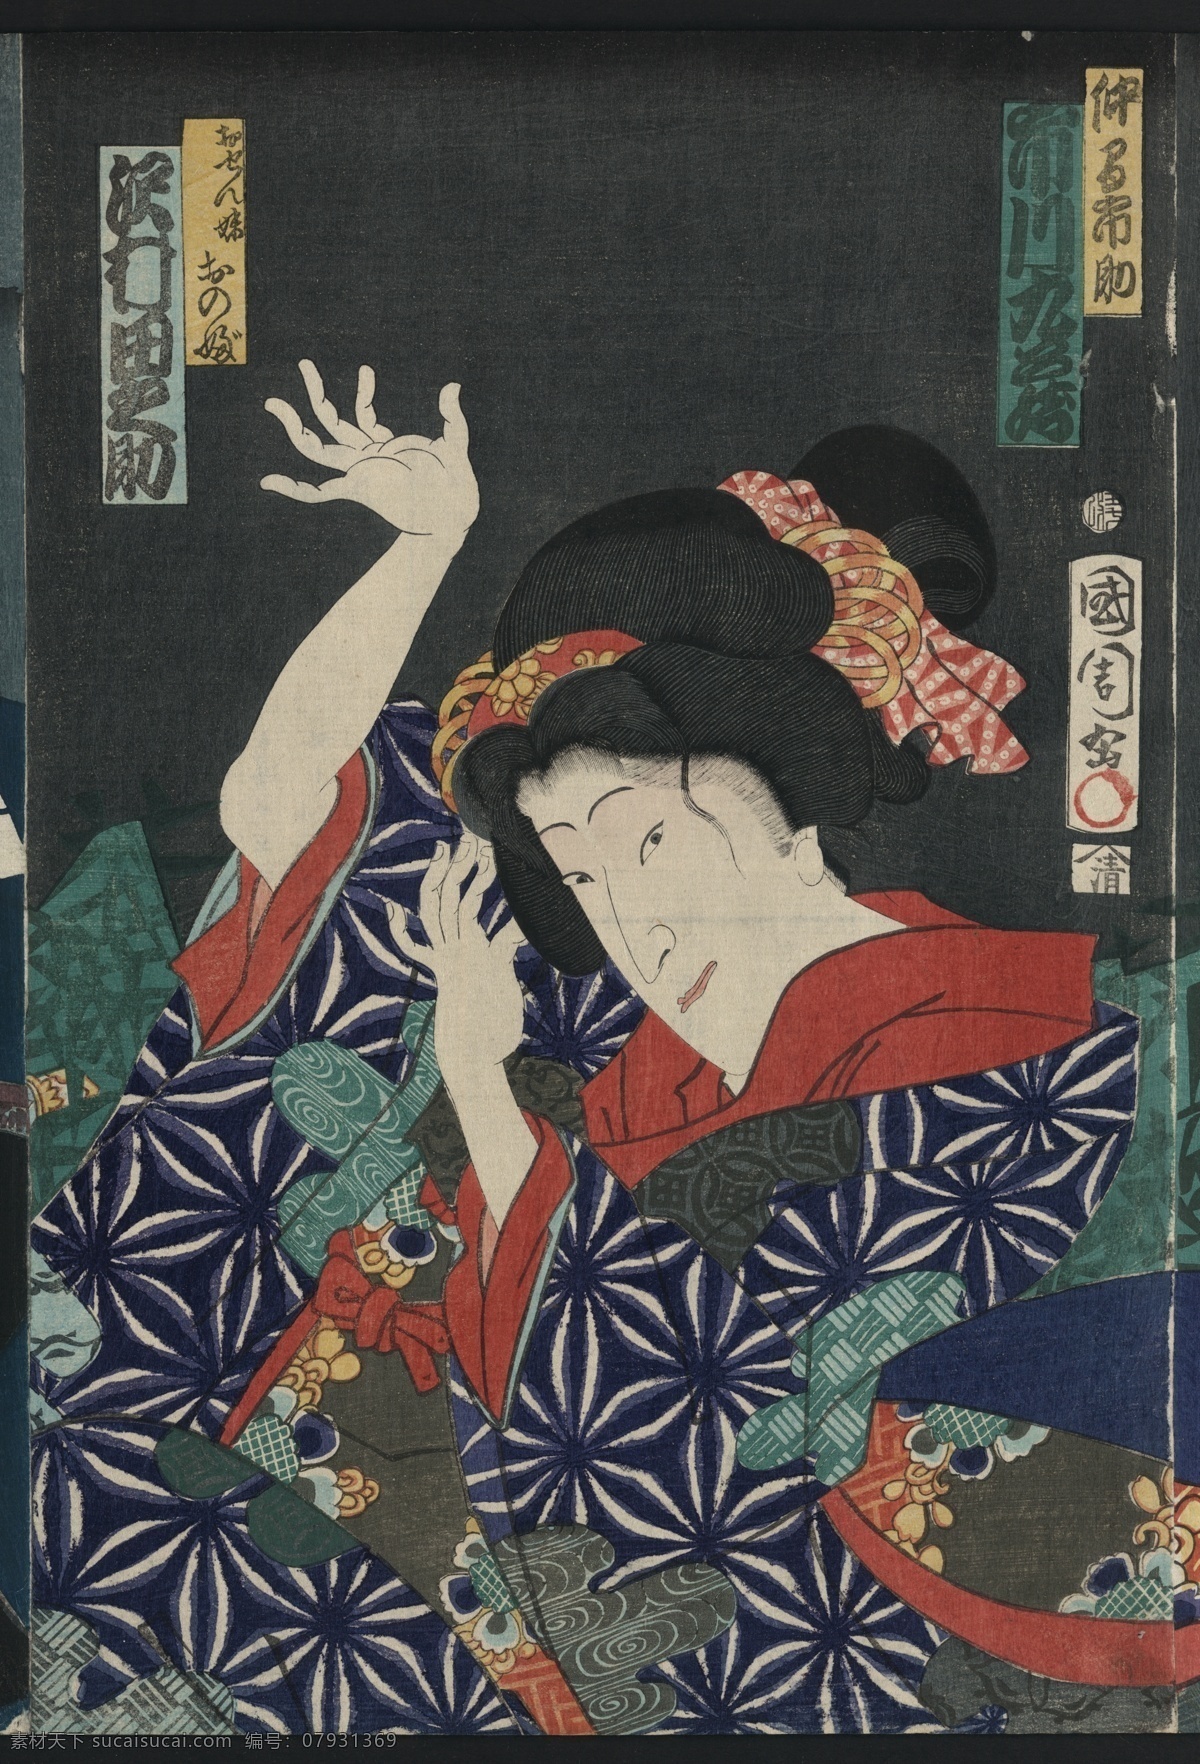 日本 浮世绘 国画 绘 高清 图 浮世绘油画 日本绘画 大和民族 日本风格 人物画 人物画设计 装饰画 油画 油画浮世绘 油画设计 文化艺术 绘画书法 日本浮世绘